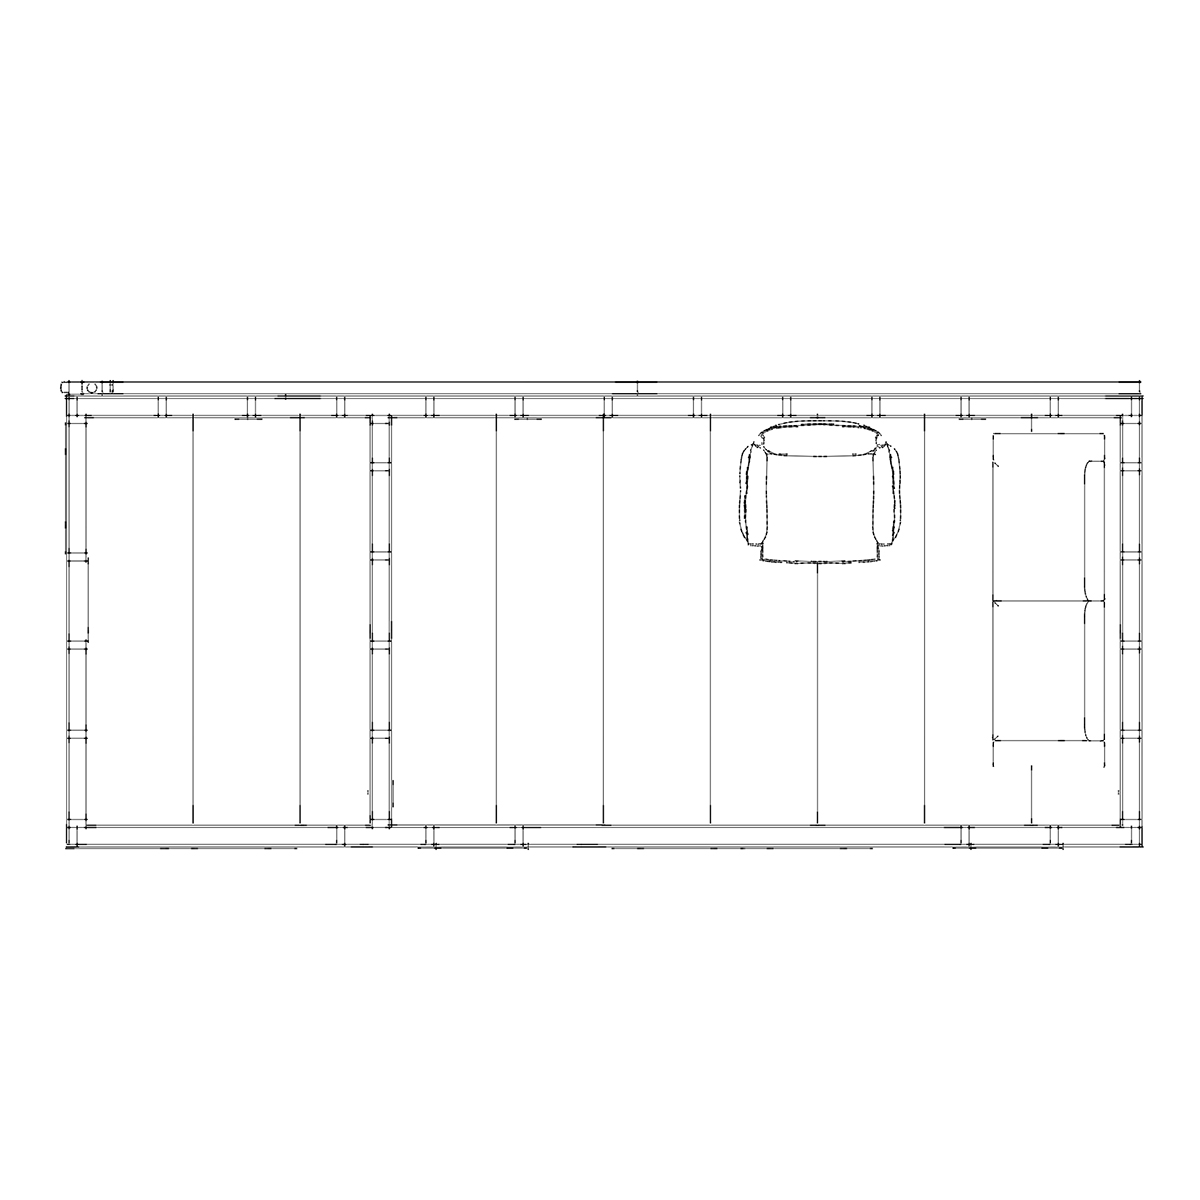 Floorplan of bespoke summerhouse